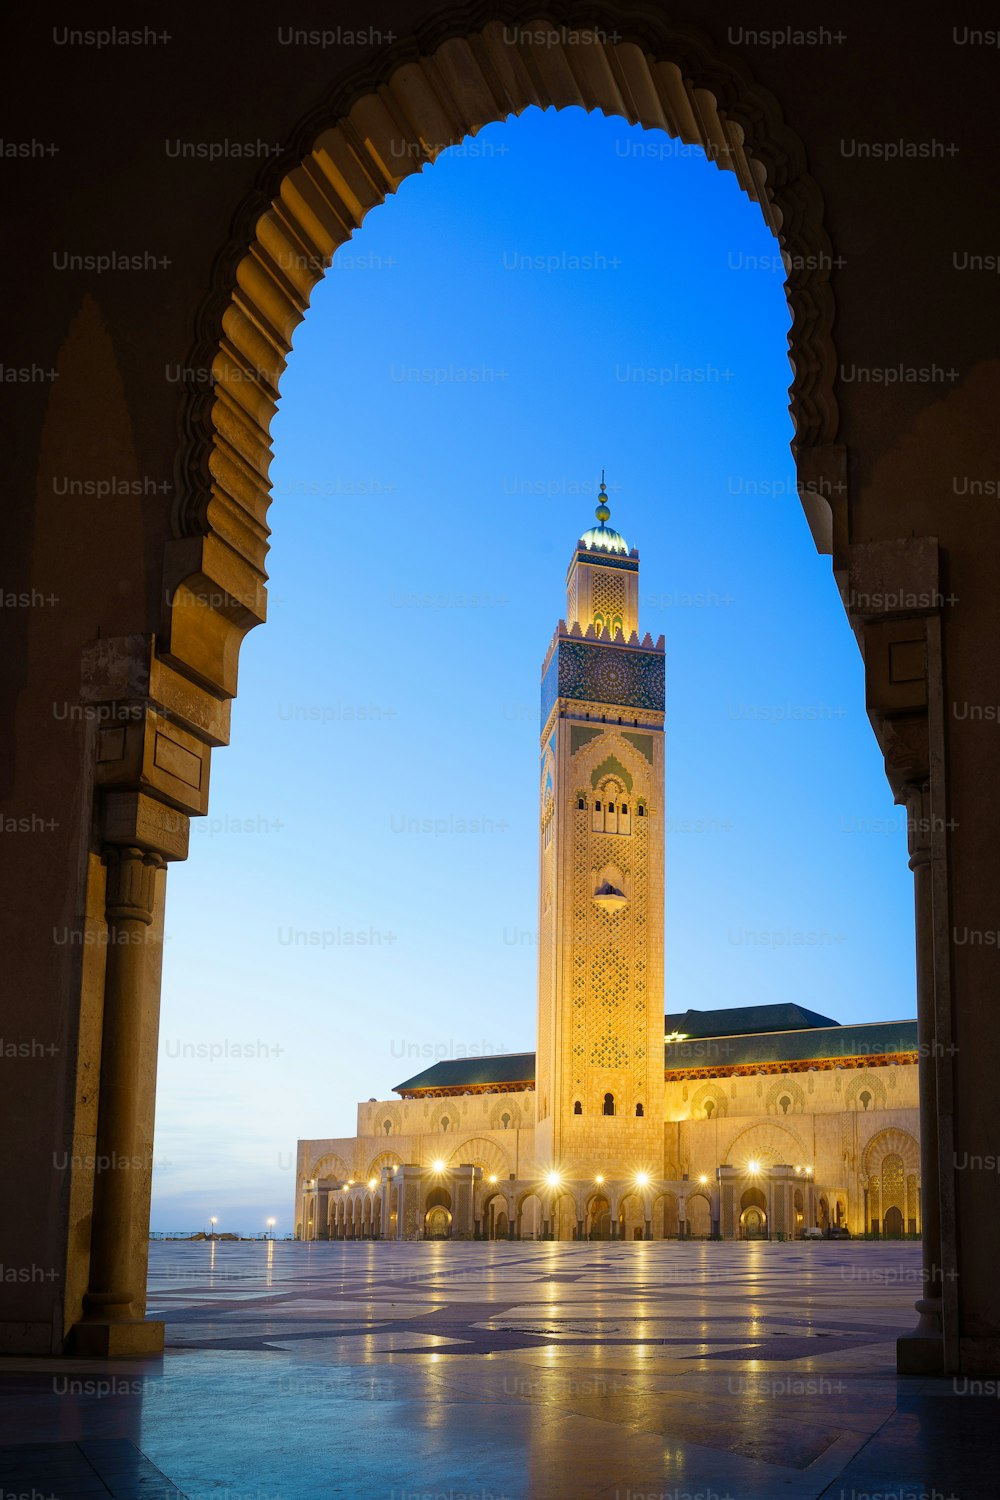 La moschea illuminata di Hassan II con il suo riflesso sul terreno sassoso a Casablanca, in Marocco